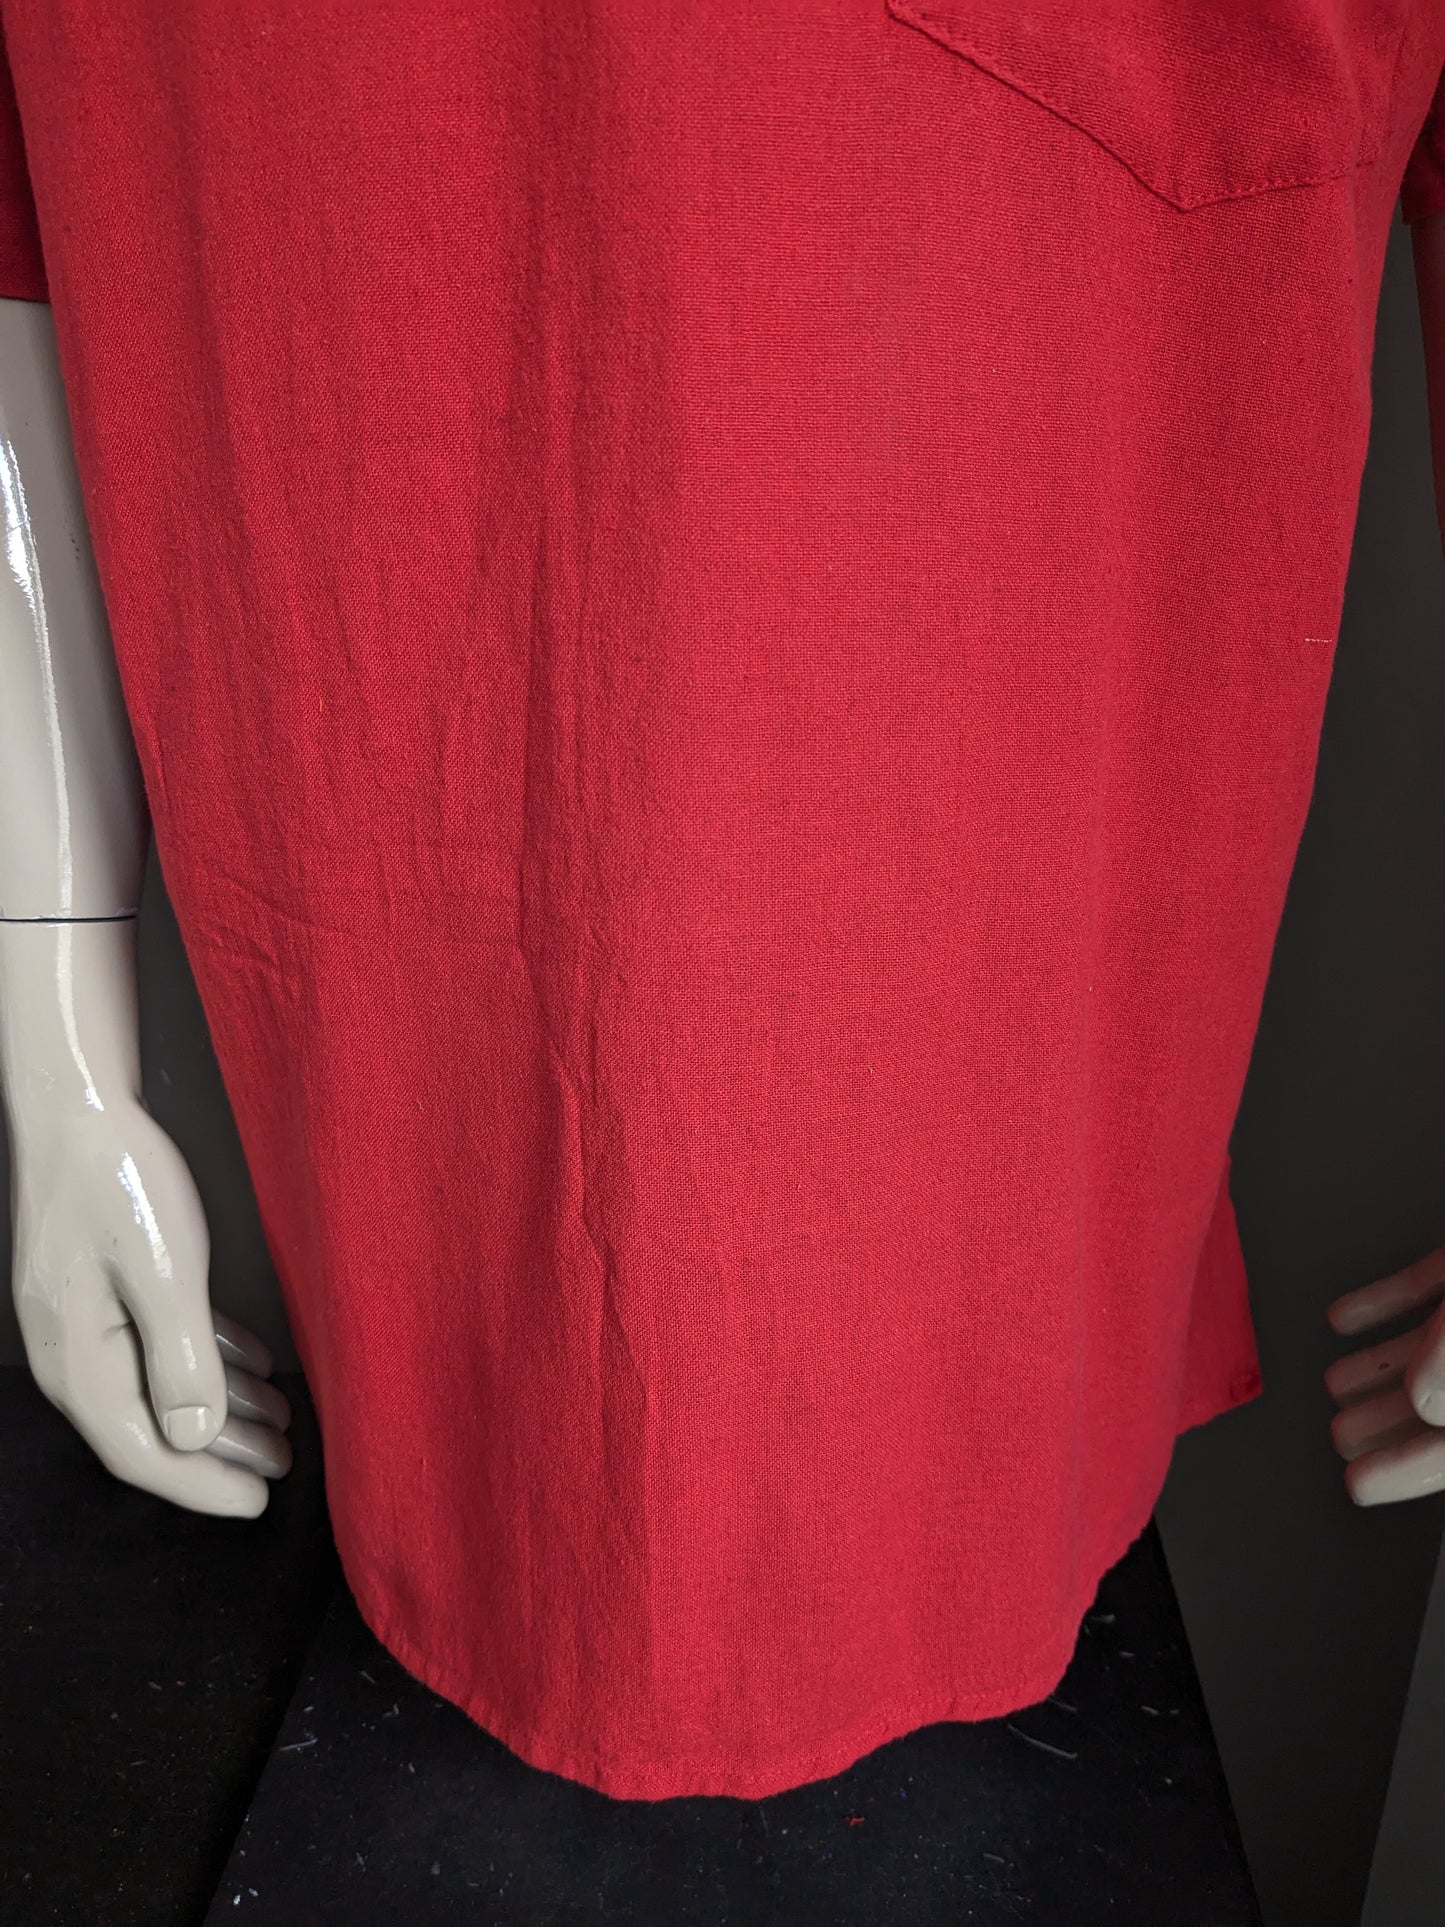 Camicia vintage couleurs du monde con mao / agricoltore / colletto in piedi e 1 borsa. Rosso colorato. Dimensione 2xl / xxl.